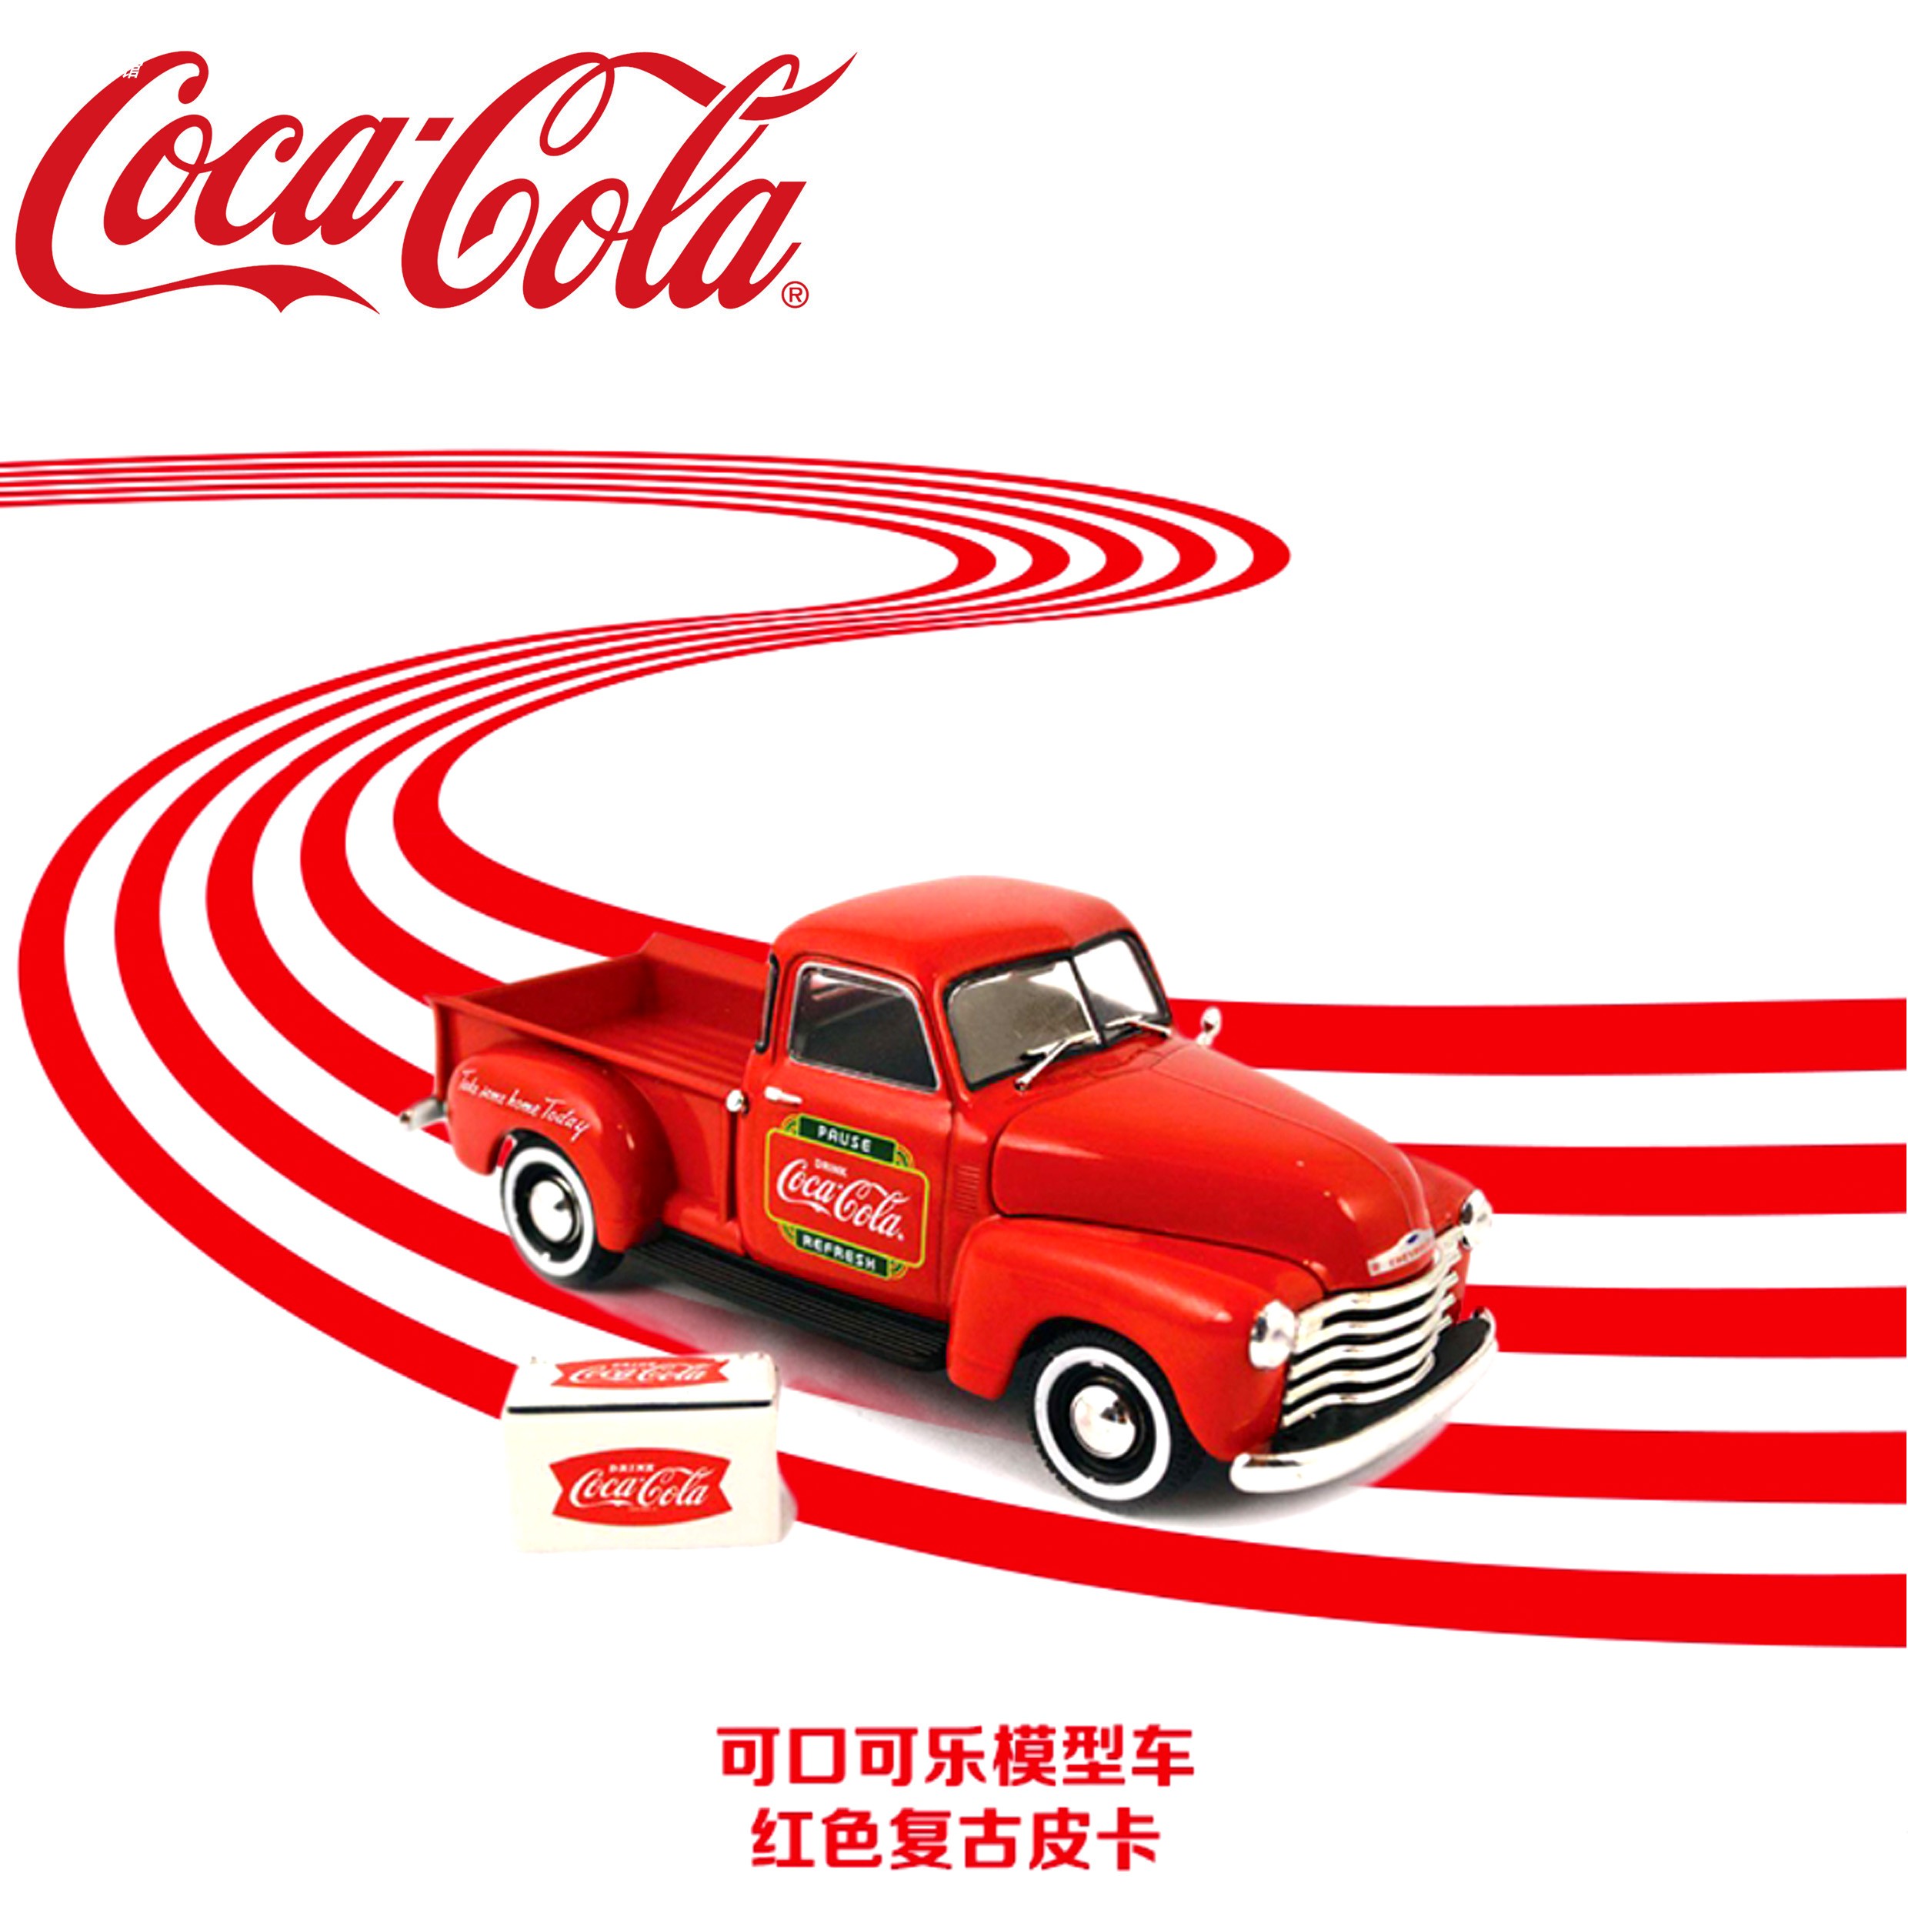 可口可乐Coca-Cola1953雪佛兰皮卡金属合金玩具汽车模型限量珍藏